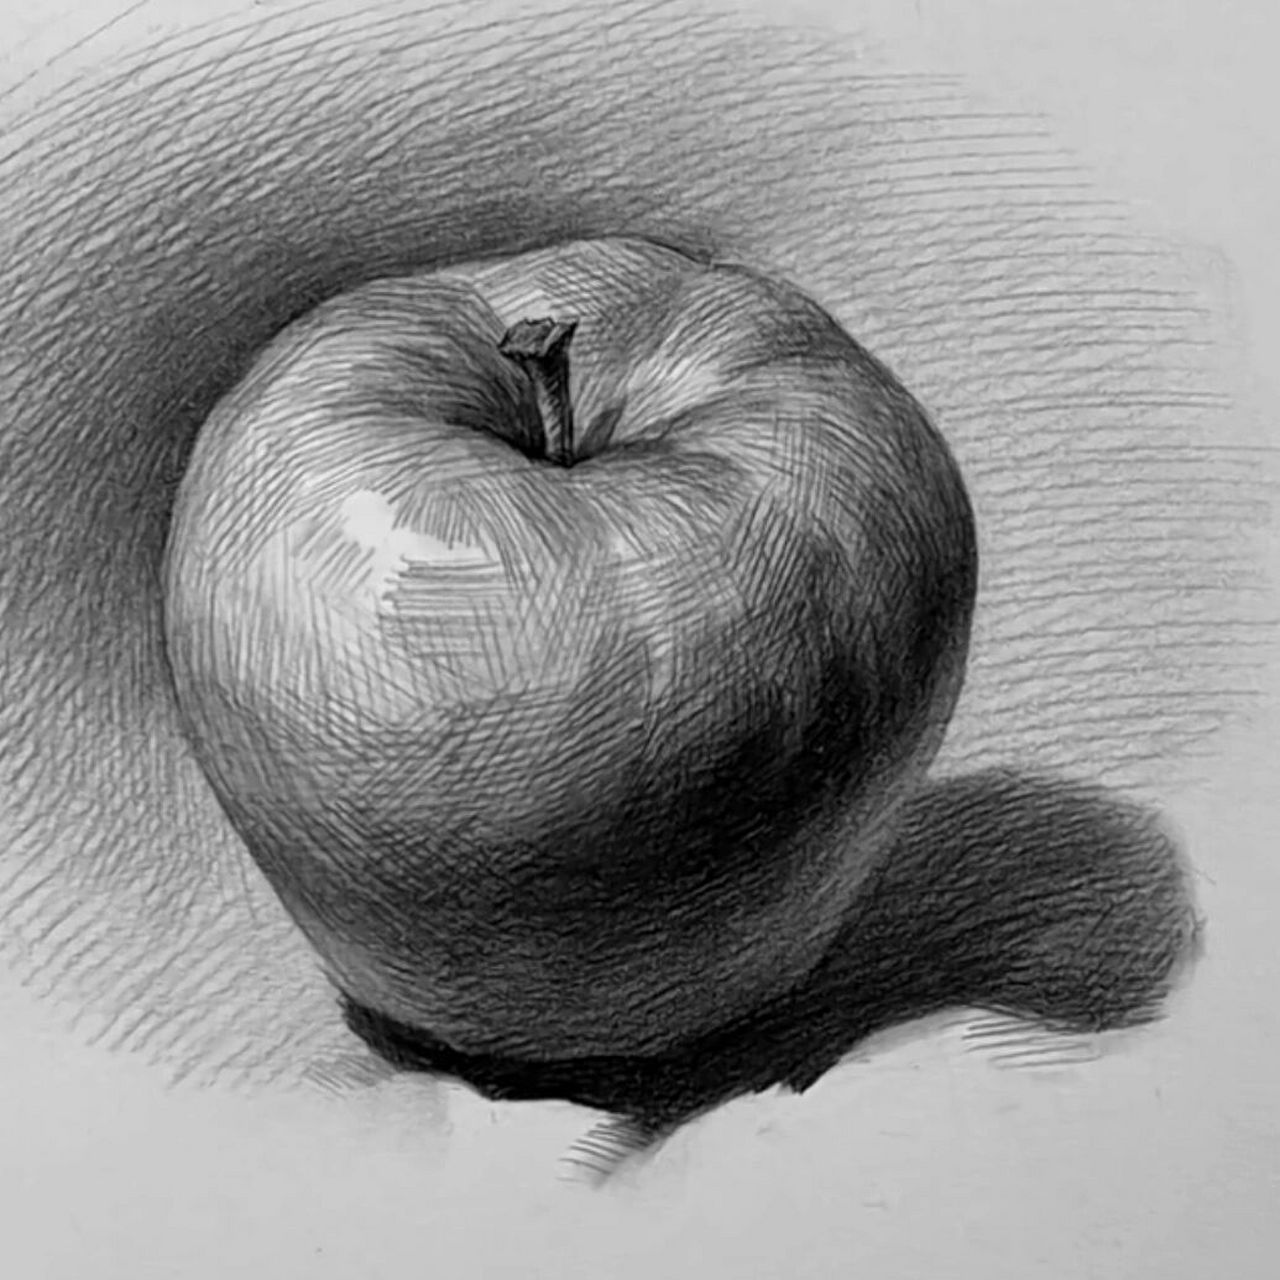 苹果的创意故事素描图片